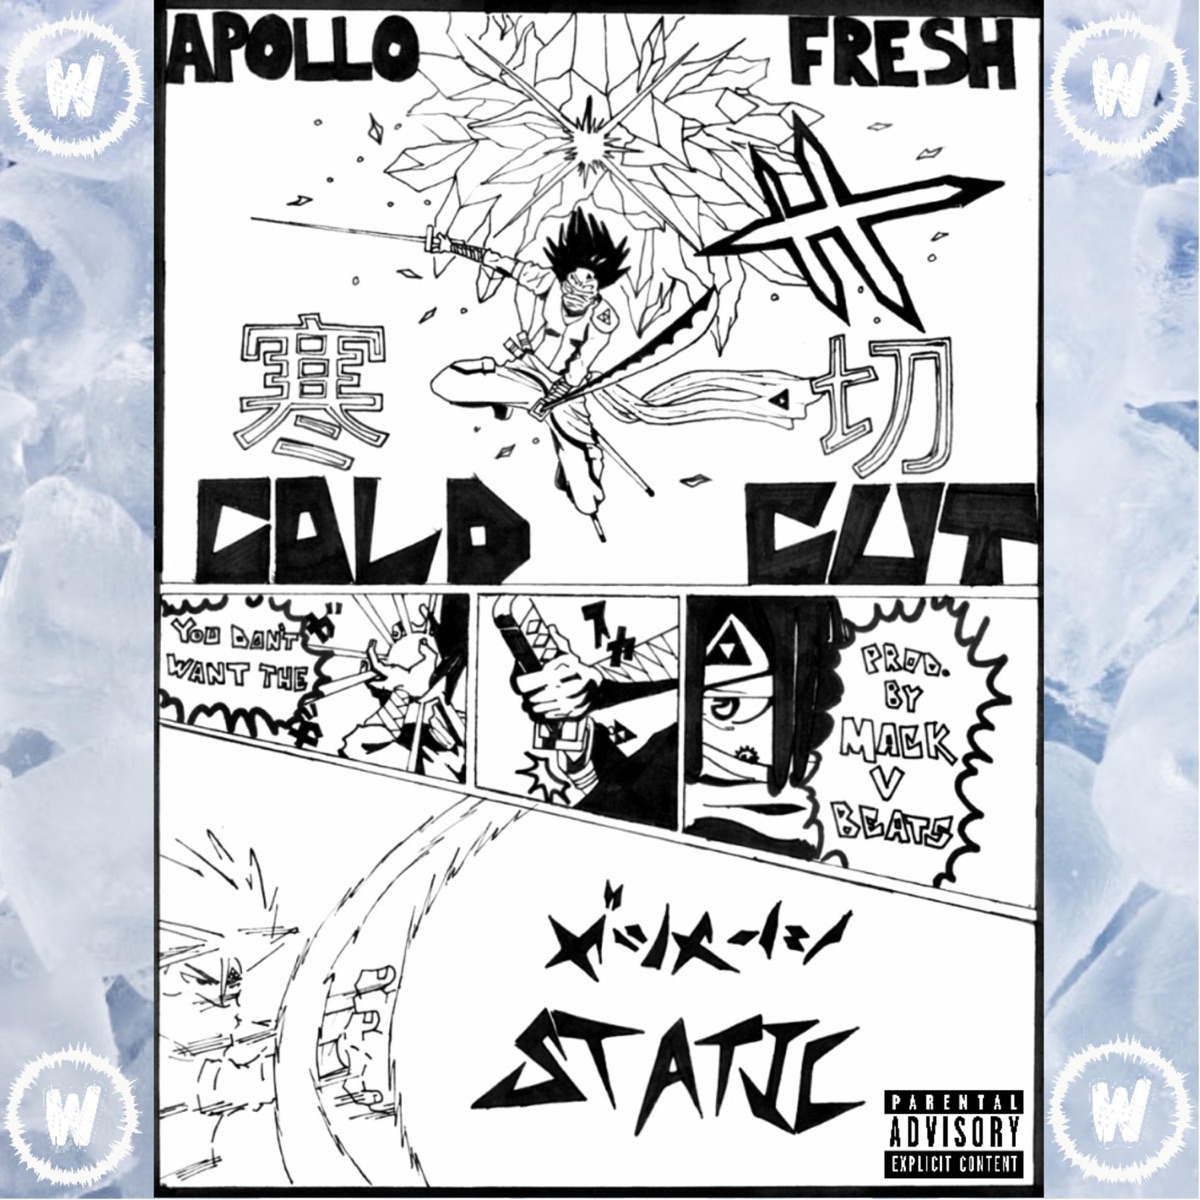 JoJo Pose - Single — álbum de Apollo Fresh — Apple Music